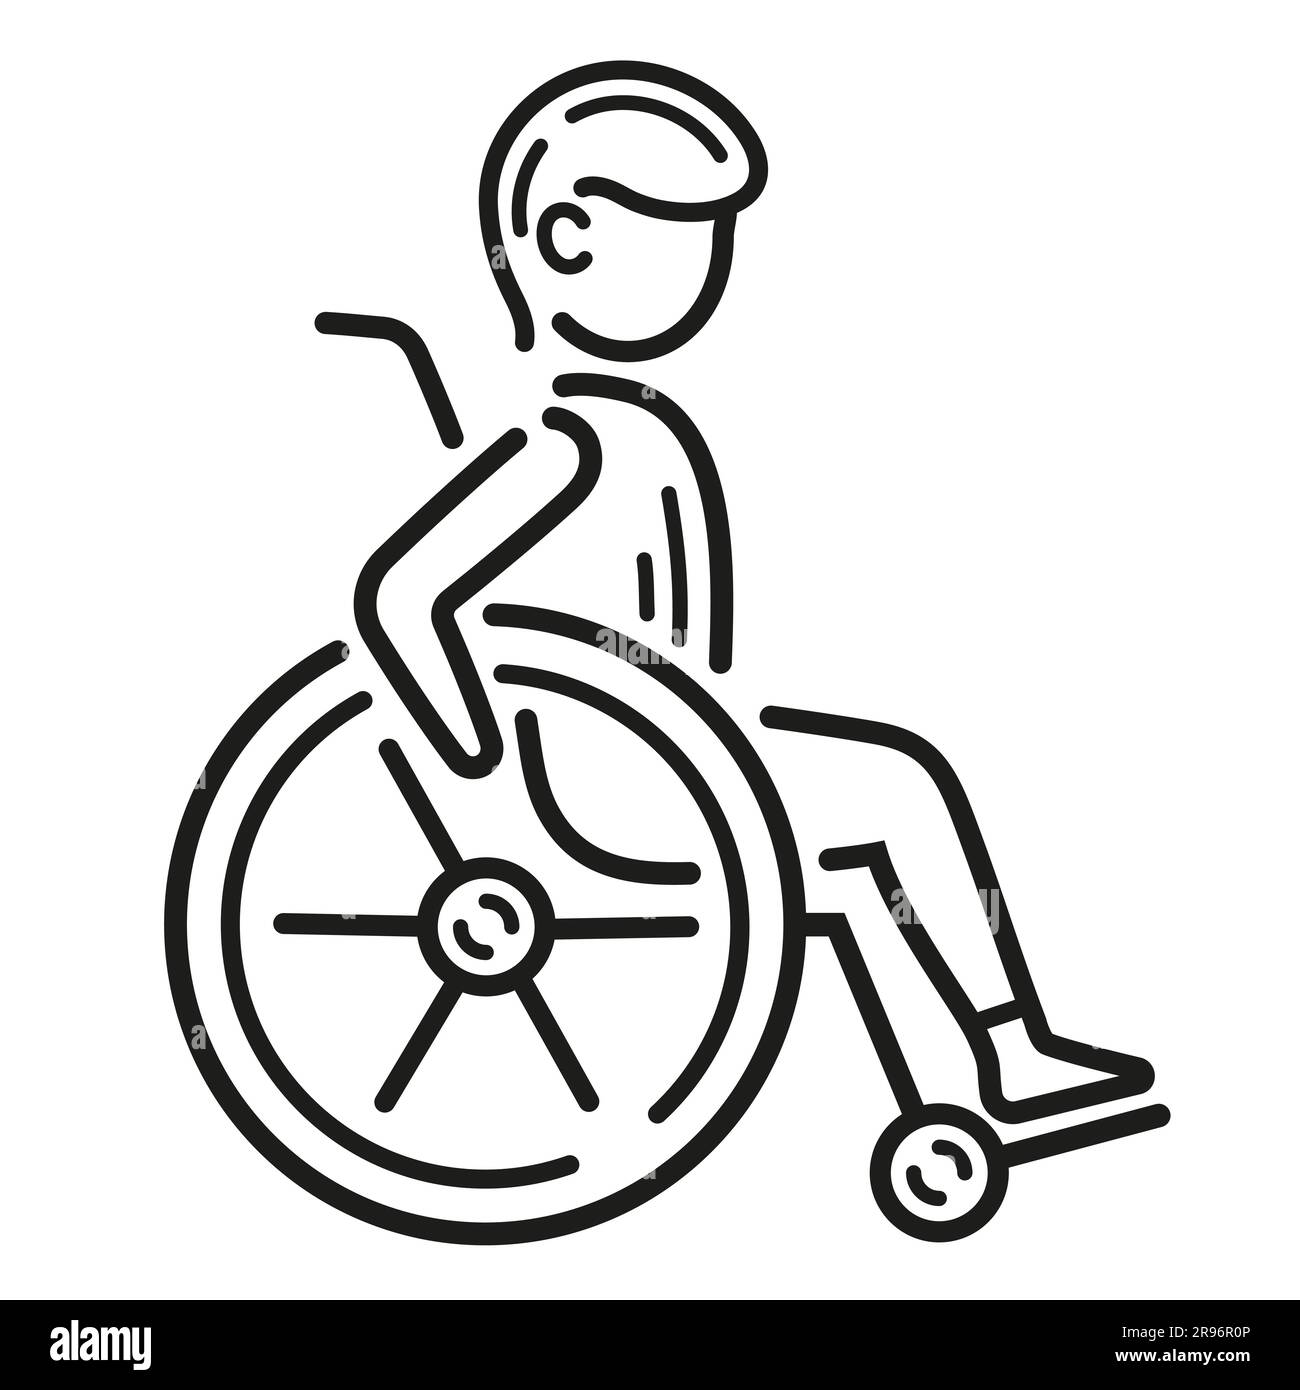 Personne handicapée en fauteuil roulant, personne atteinte de troubles de santé physique, siège du patient de l'hôpital dans la ligne de chaise roulante médicale icône. Vecteur de toilettes publiques Illustration de Vecteur